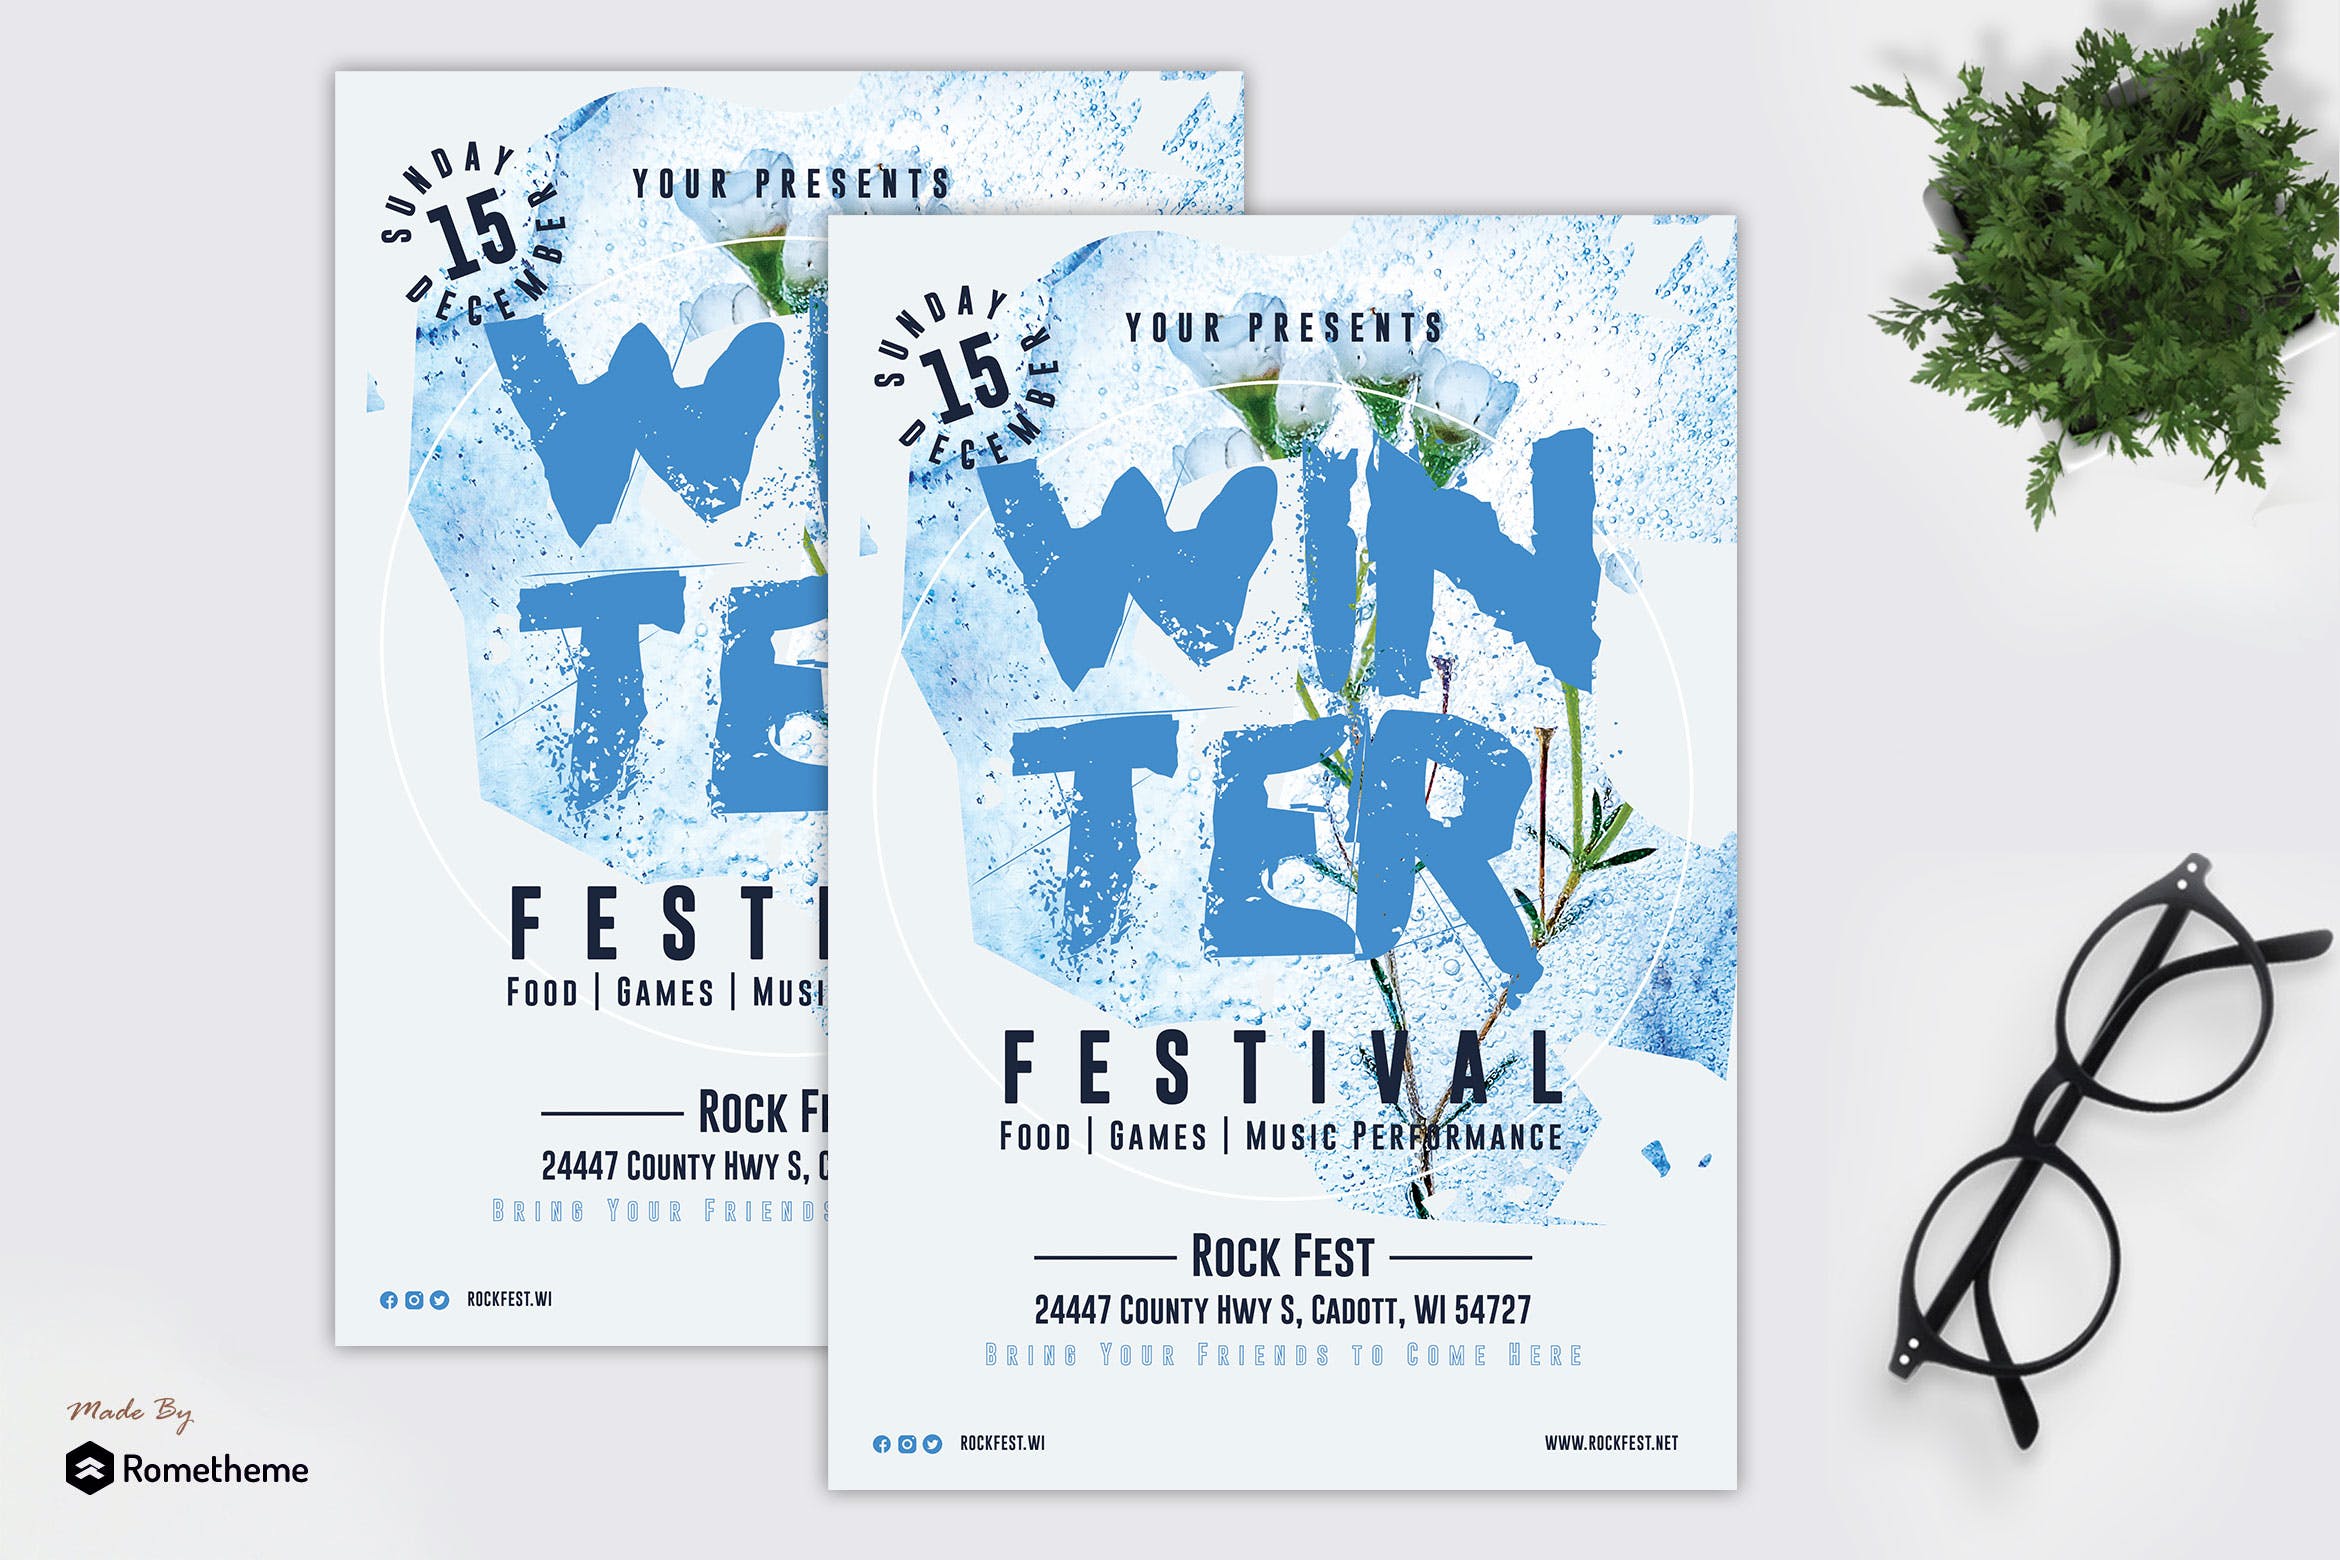 冬季音乐节活动传单设计模板 Winter – Music Festival Flyer Template RY插图